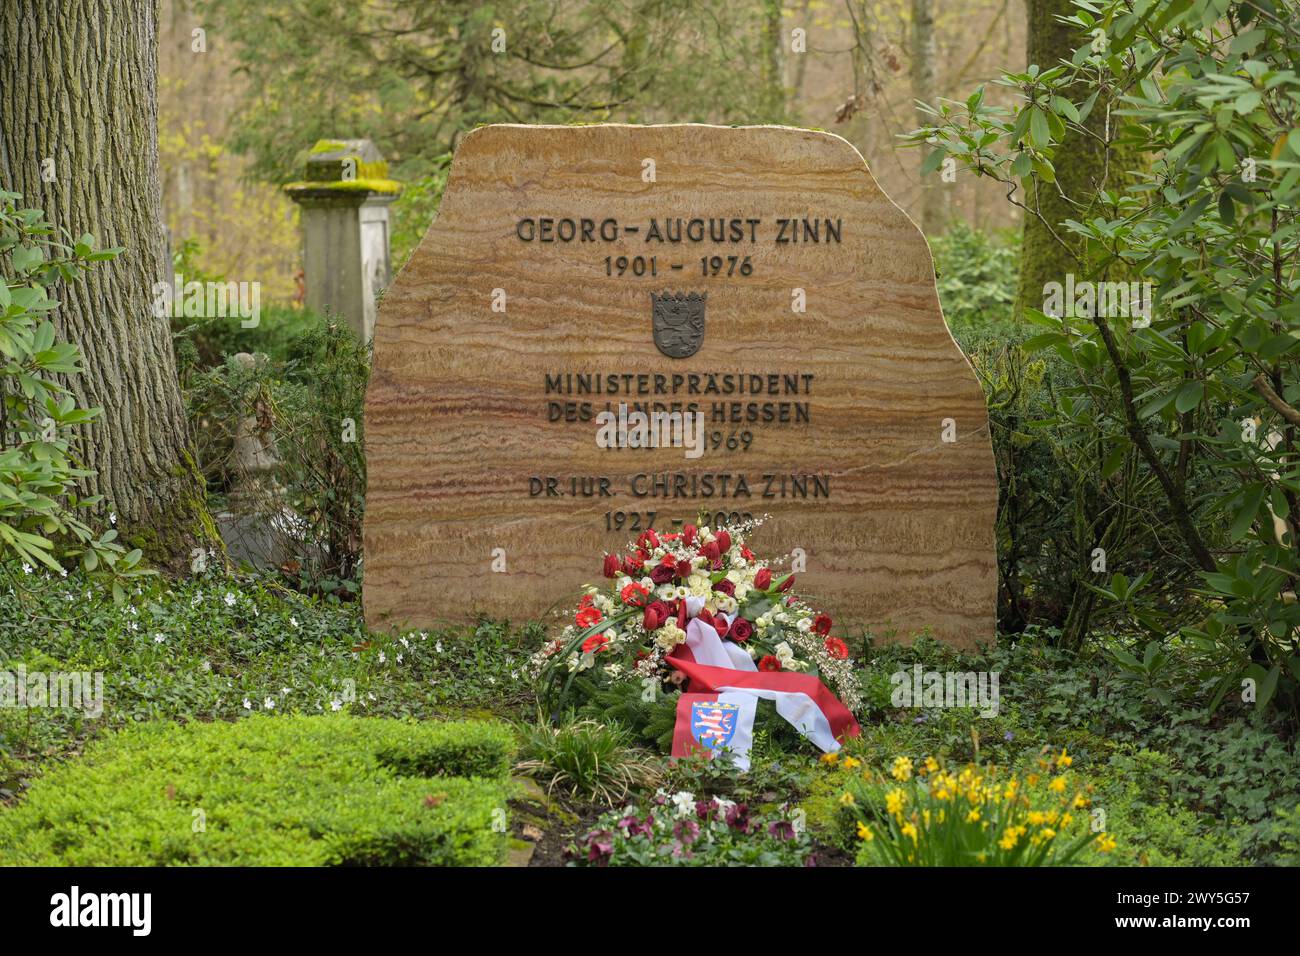 Nehmen Sie Georg-August Zinn, Nordfriedhof, Wiesbaden, Hessen, Deutschland Stockfoto